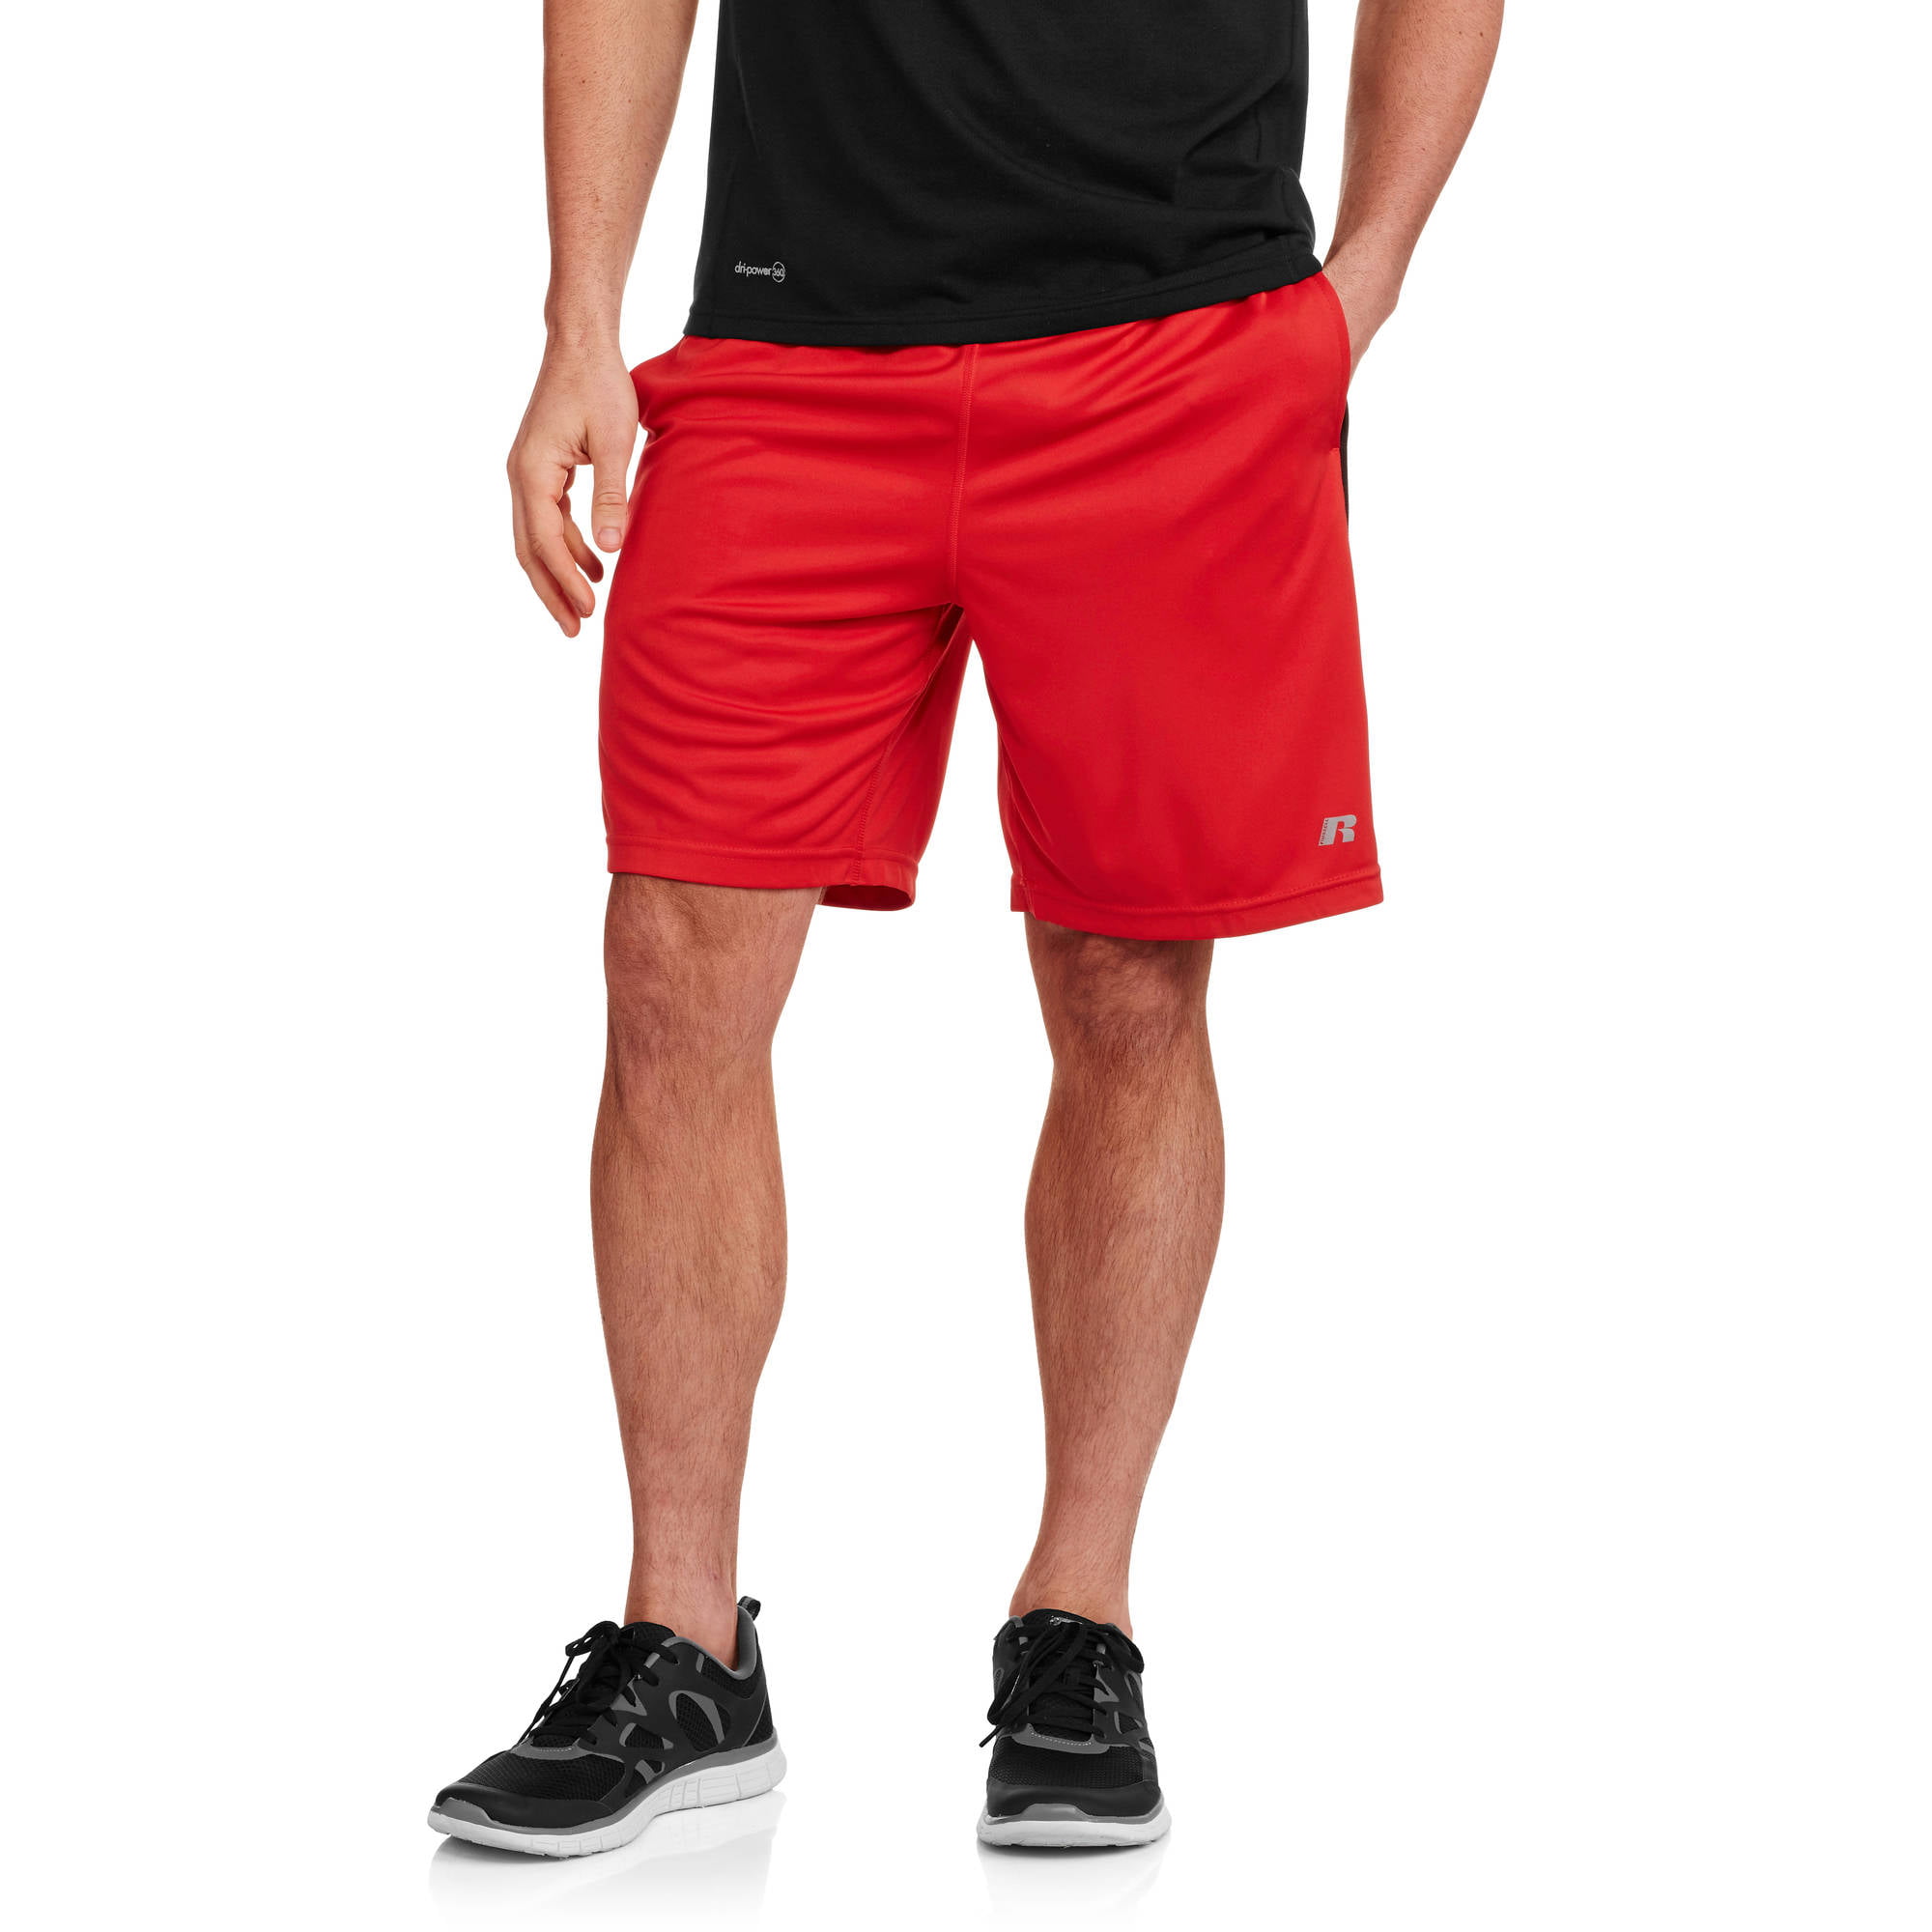 Russell Men's Interlock Athletic Shorts - Walmart.com